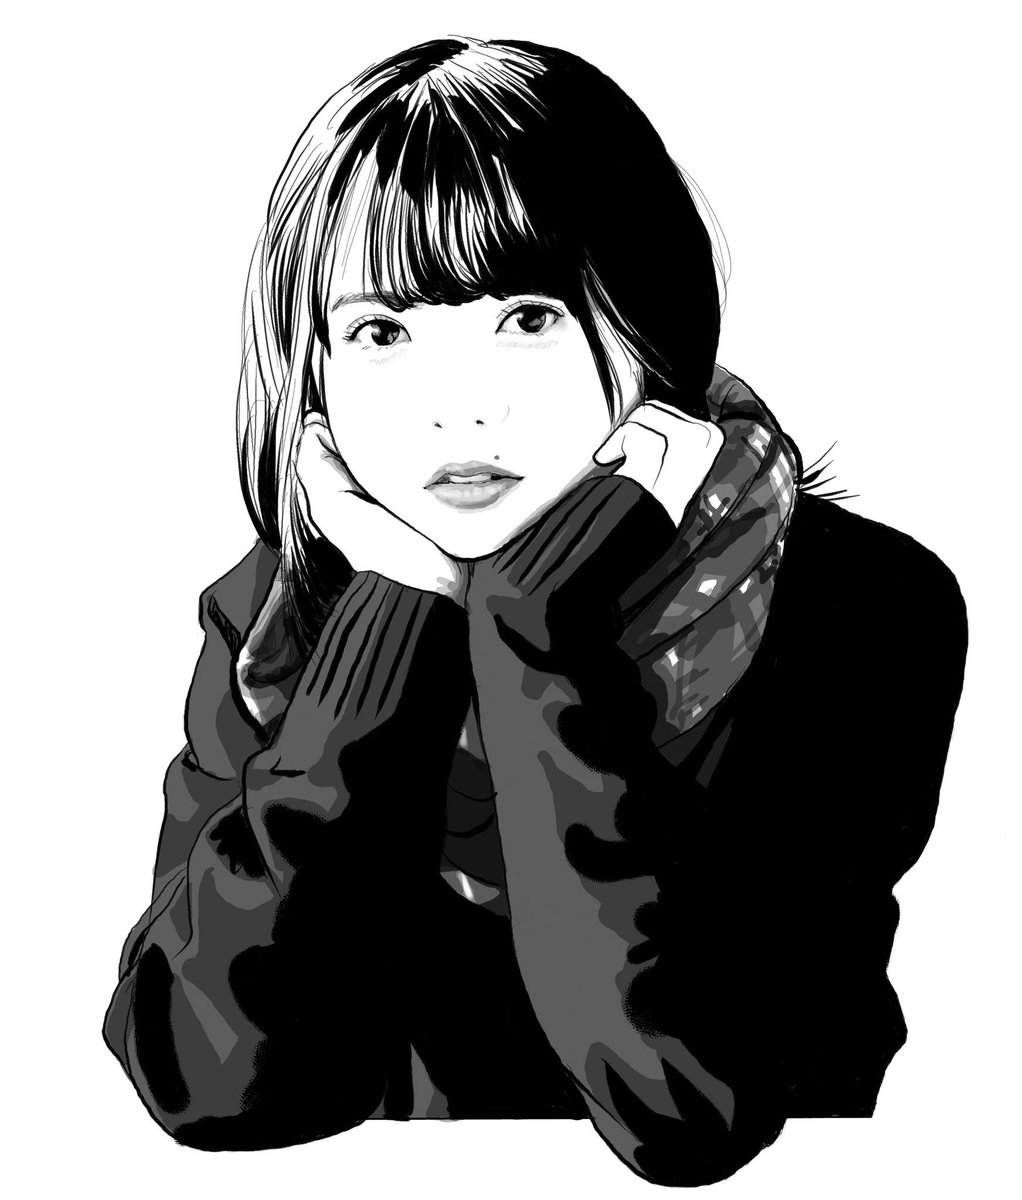 てらりん A Twitter 齋藤飛鳥さん 似顔絵 イラスト イラストレーション アイドル モデル 乃木坂46 齋藤飛鳥 あしゅ Caricature Illustration Portrait Artwork Drawing Popidol Model Nogizaka46 Asukasaito T Co Tocfspgx3g